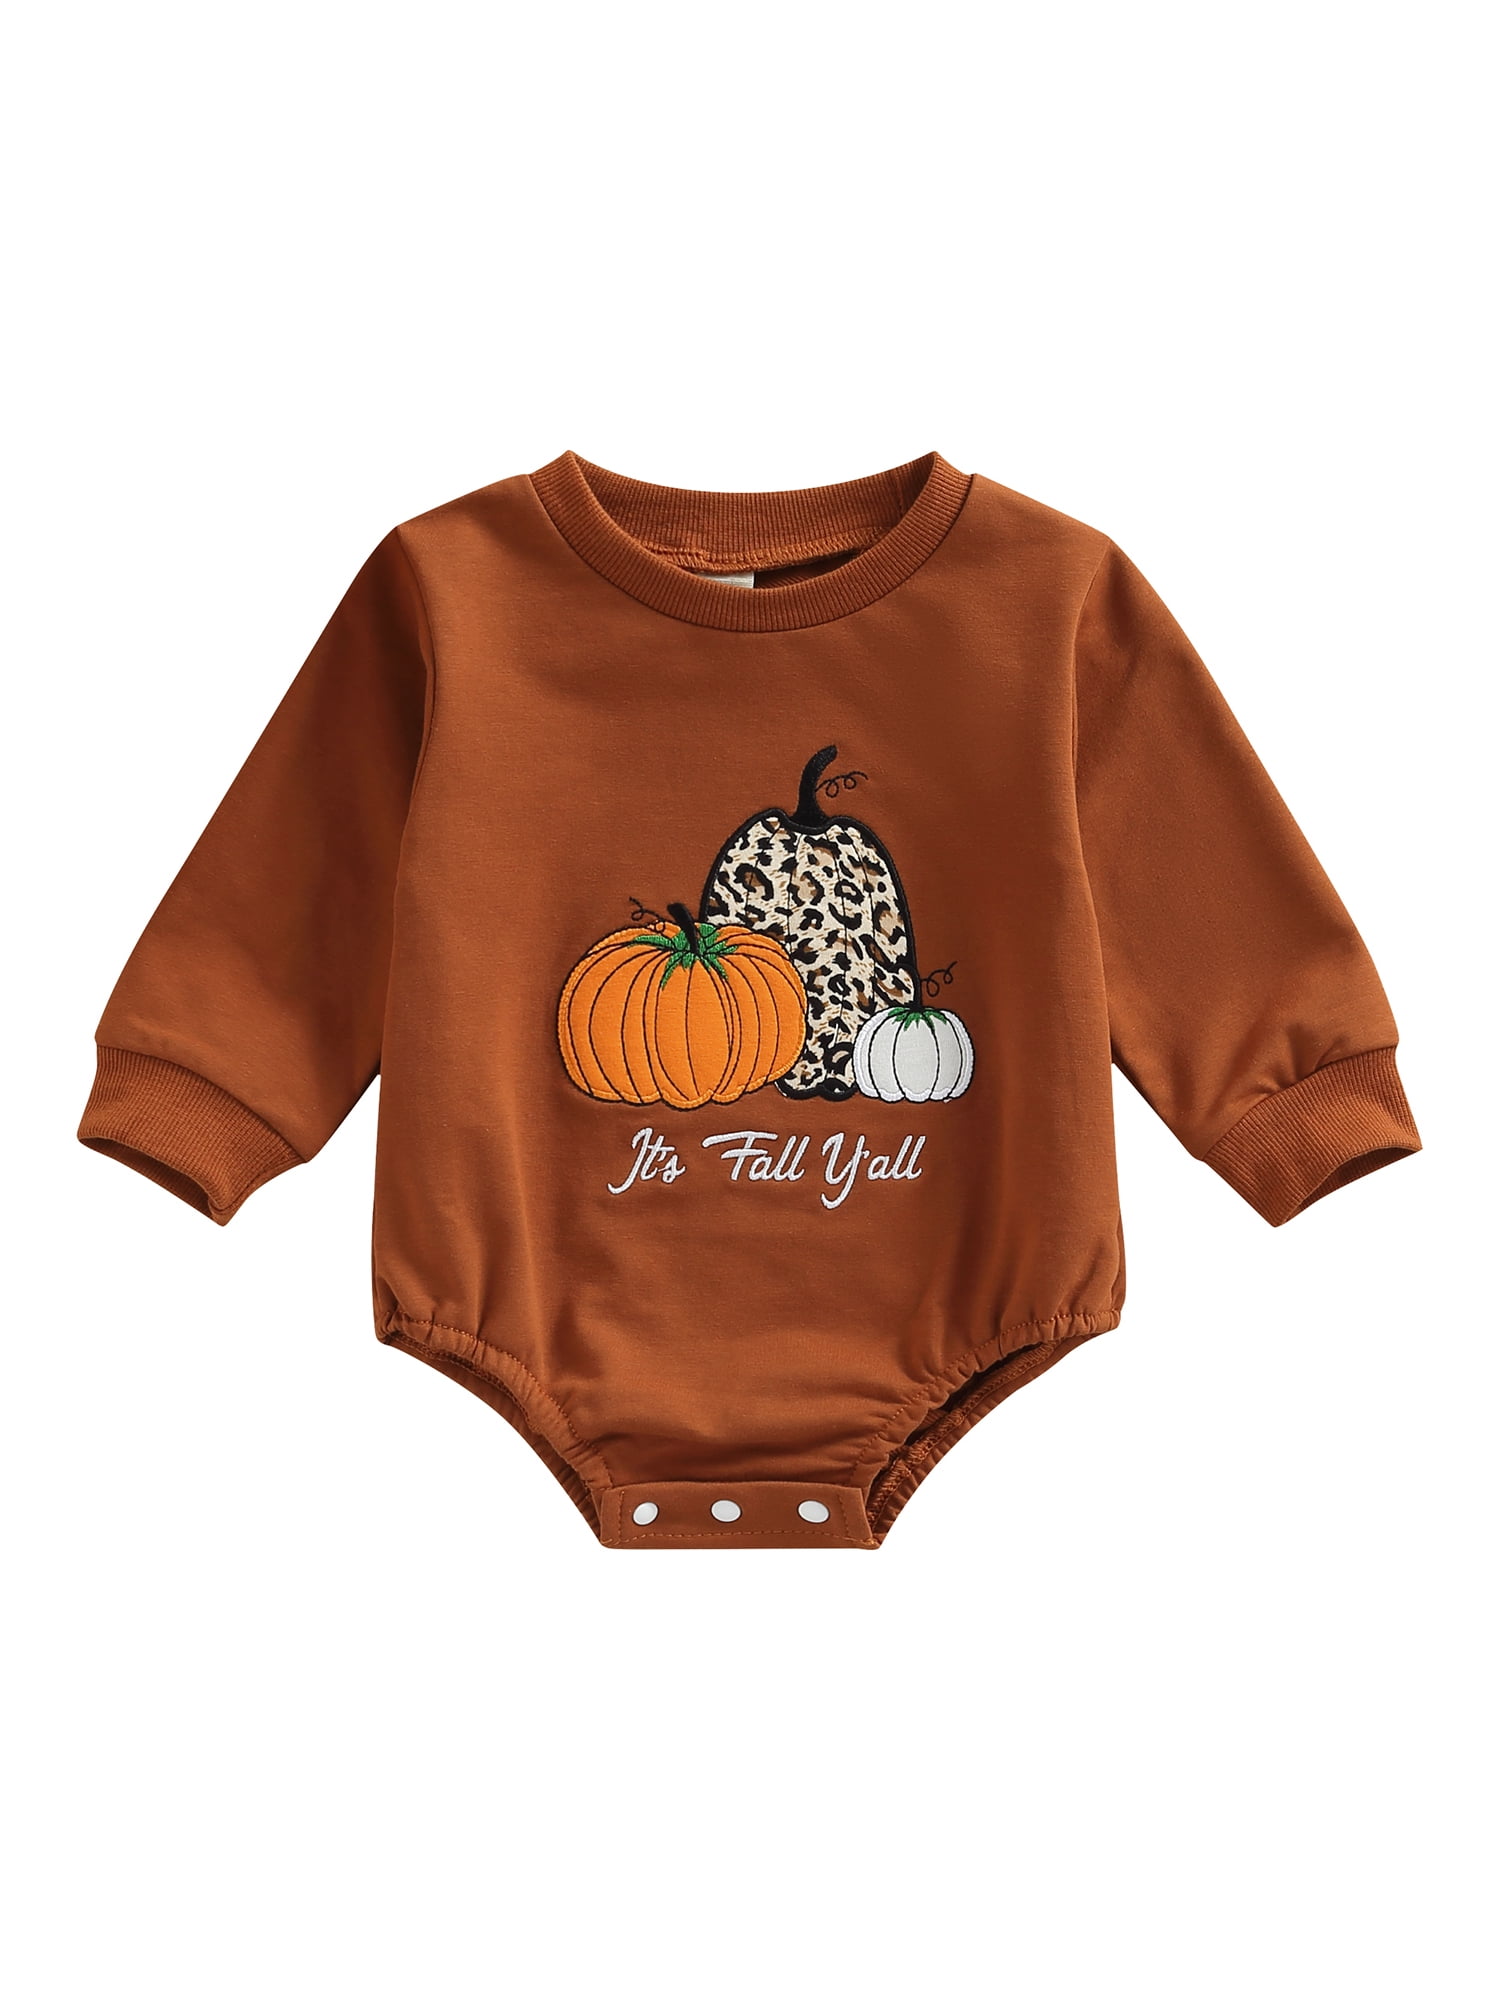 Newborn Baby Boys Girls Romper 1st Halloween Outfit Long Sleeve Pumpkin Clothes 